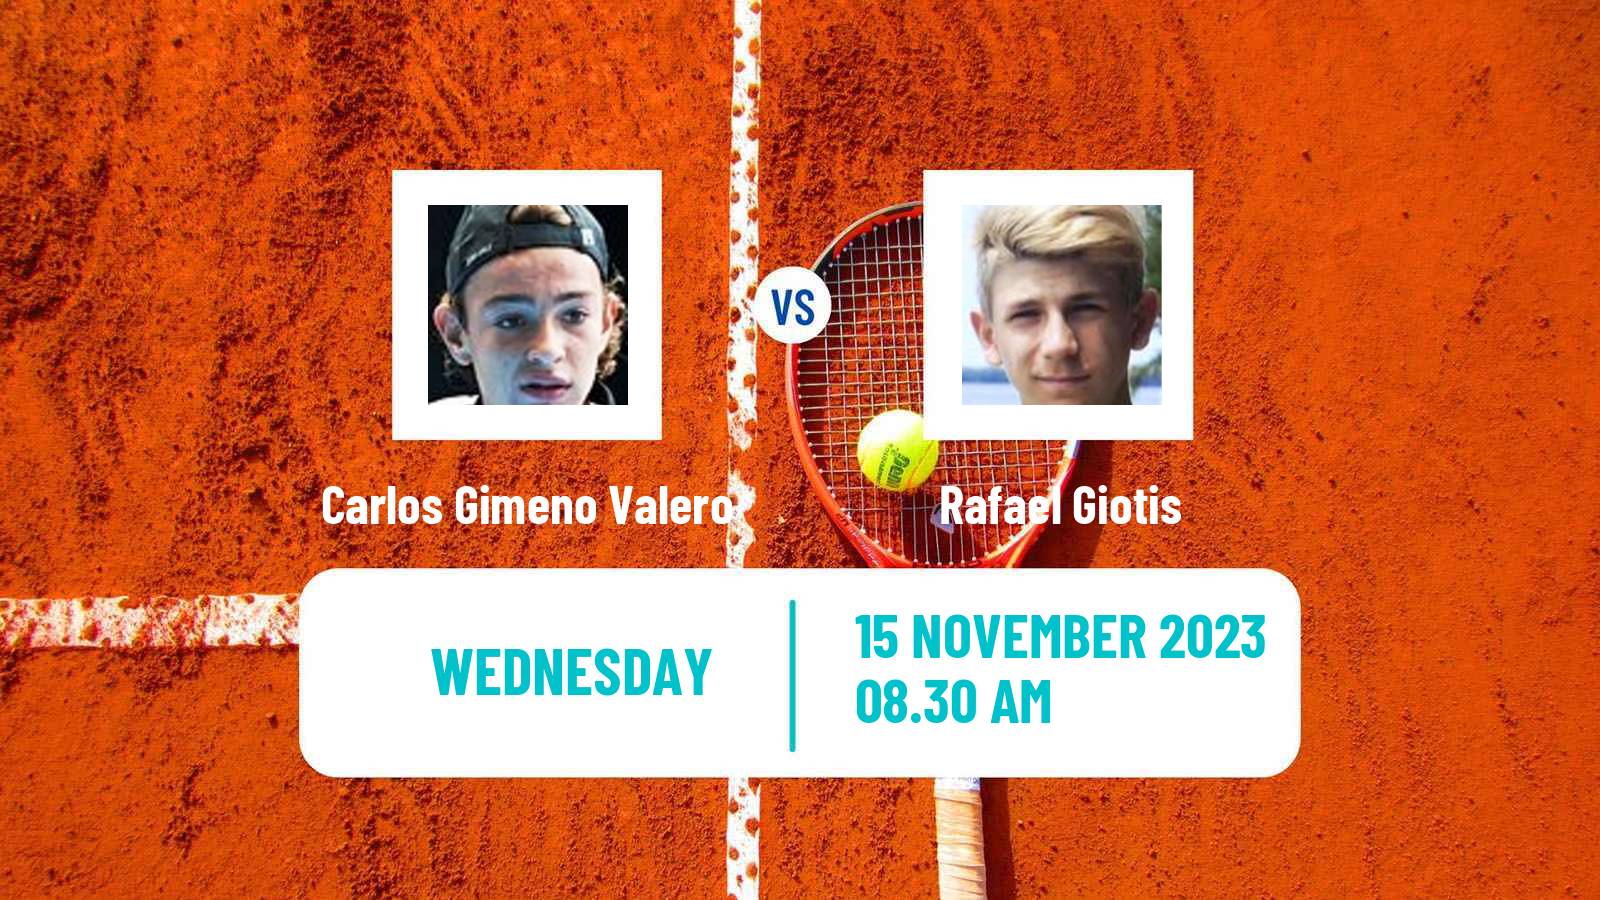 Tennis ITF M15 Valencia Men Carlos Gimeno Valero - Rafael Giotis